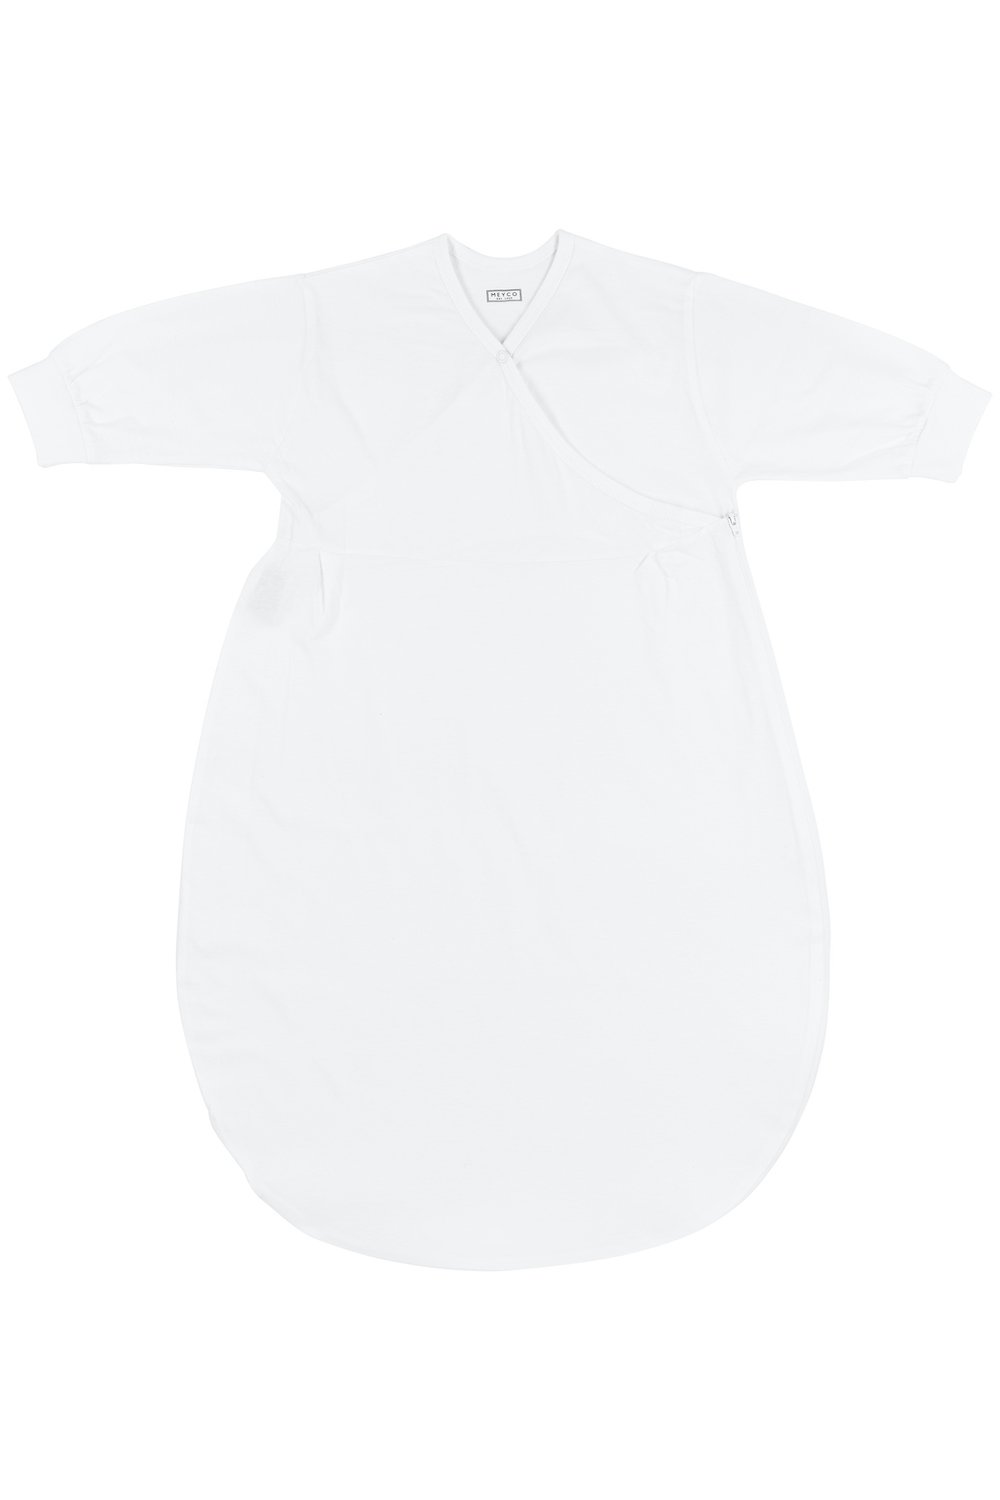 Inner sleeping bag Uni - white - 68/74